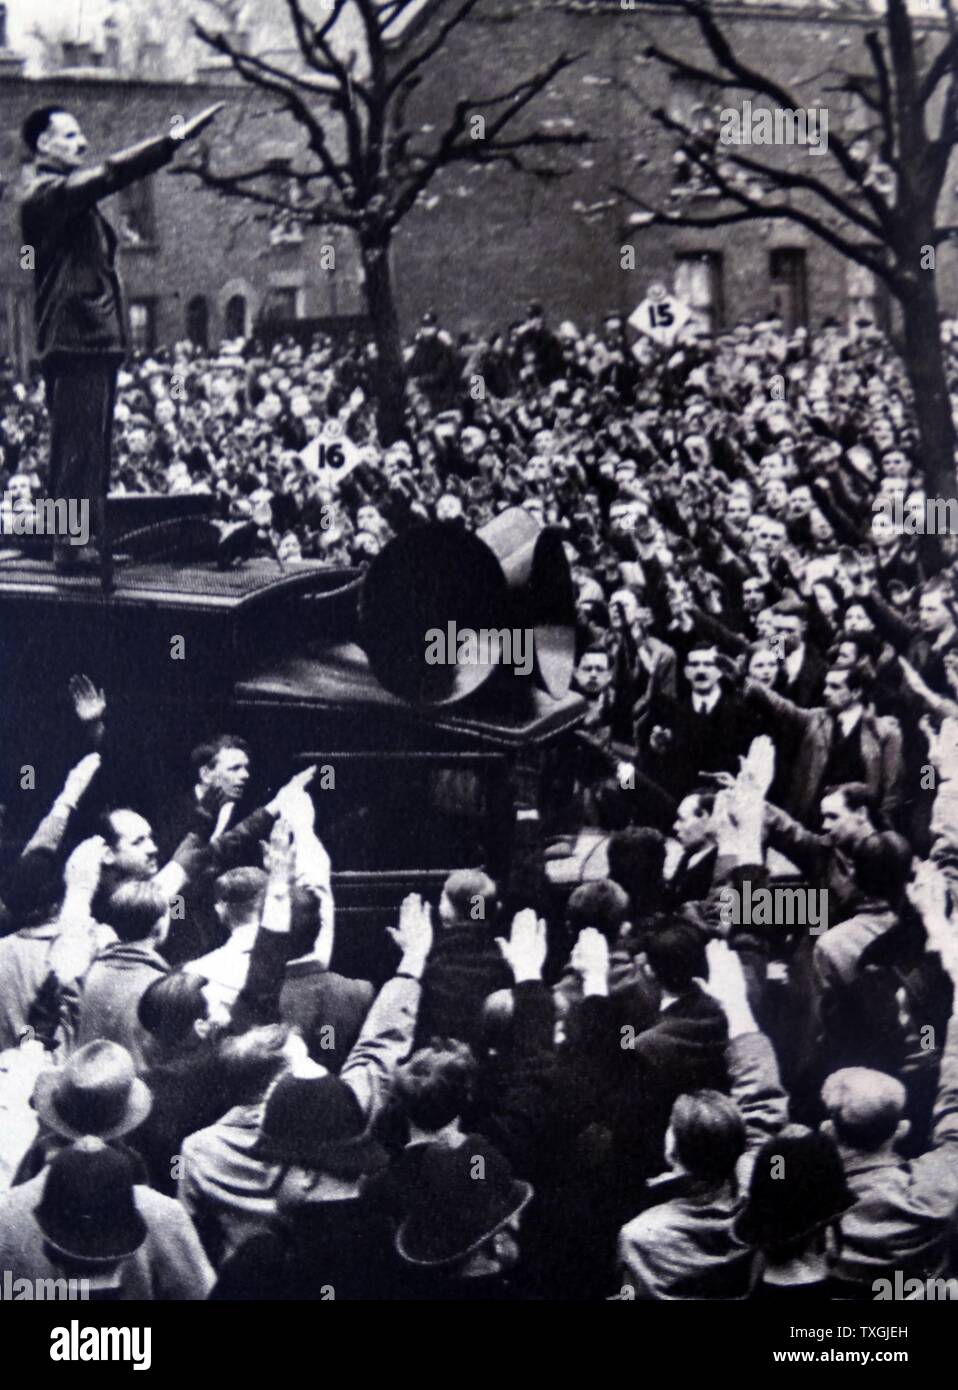 Fotoabzug der British Union of Fascists führend, Oswald Mosley, sympathisiert Adressierung bei einer Kundgebung in London. Vom 20. Jahrhundert Stockfoto